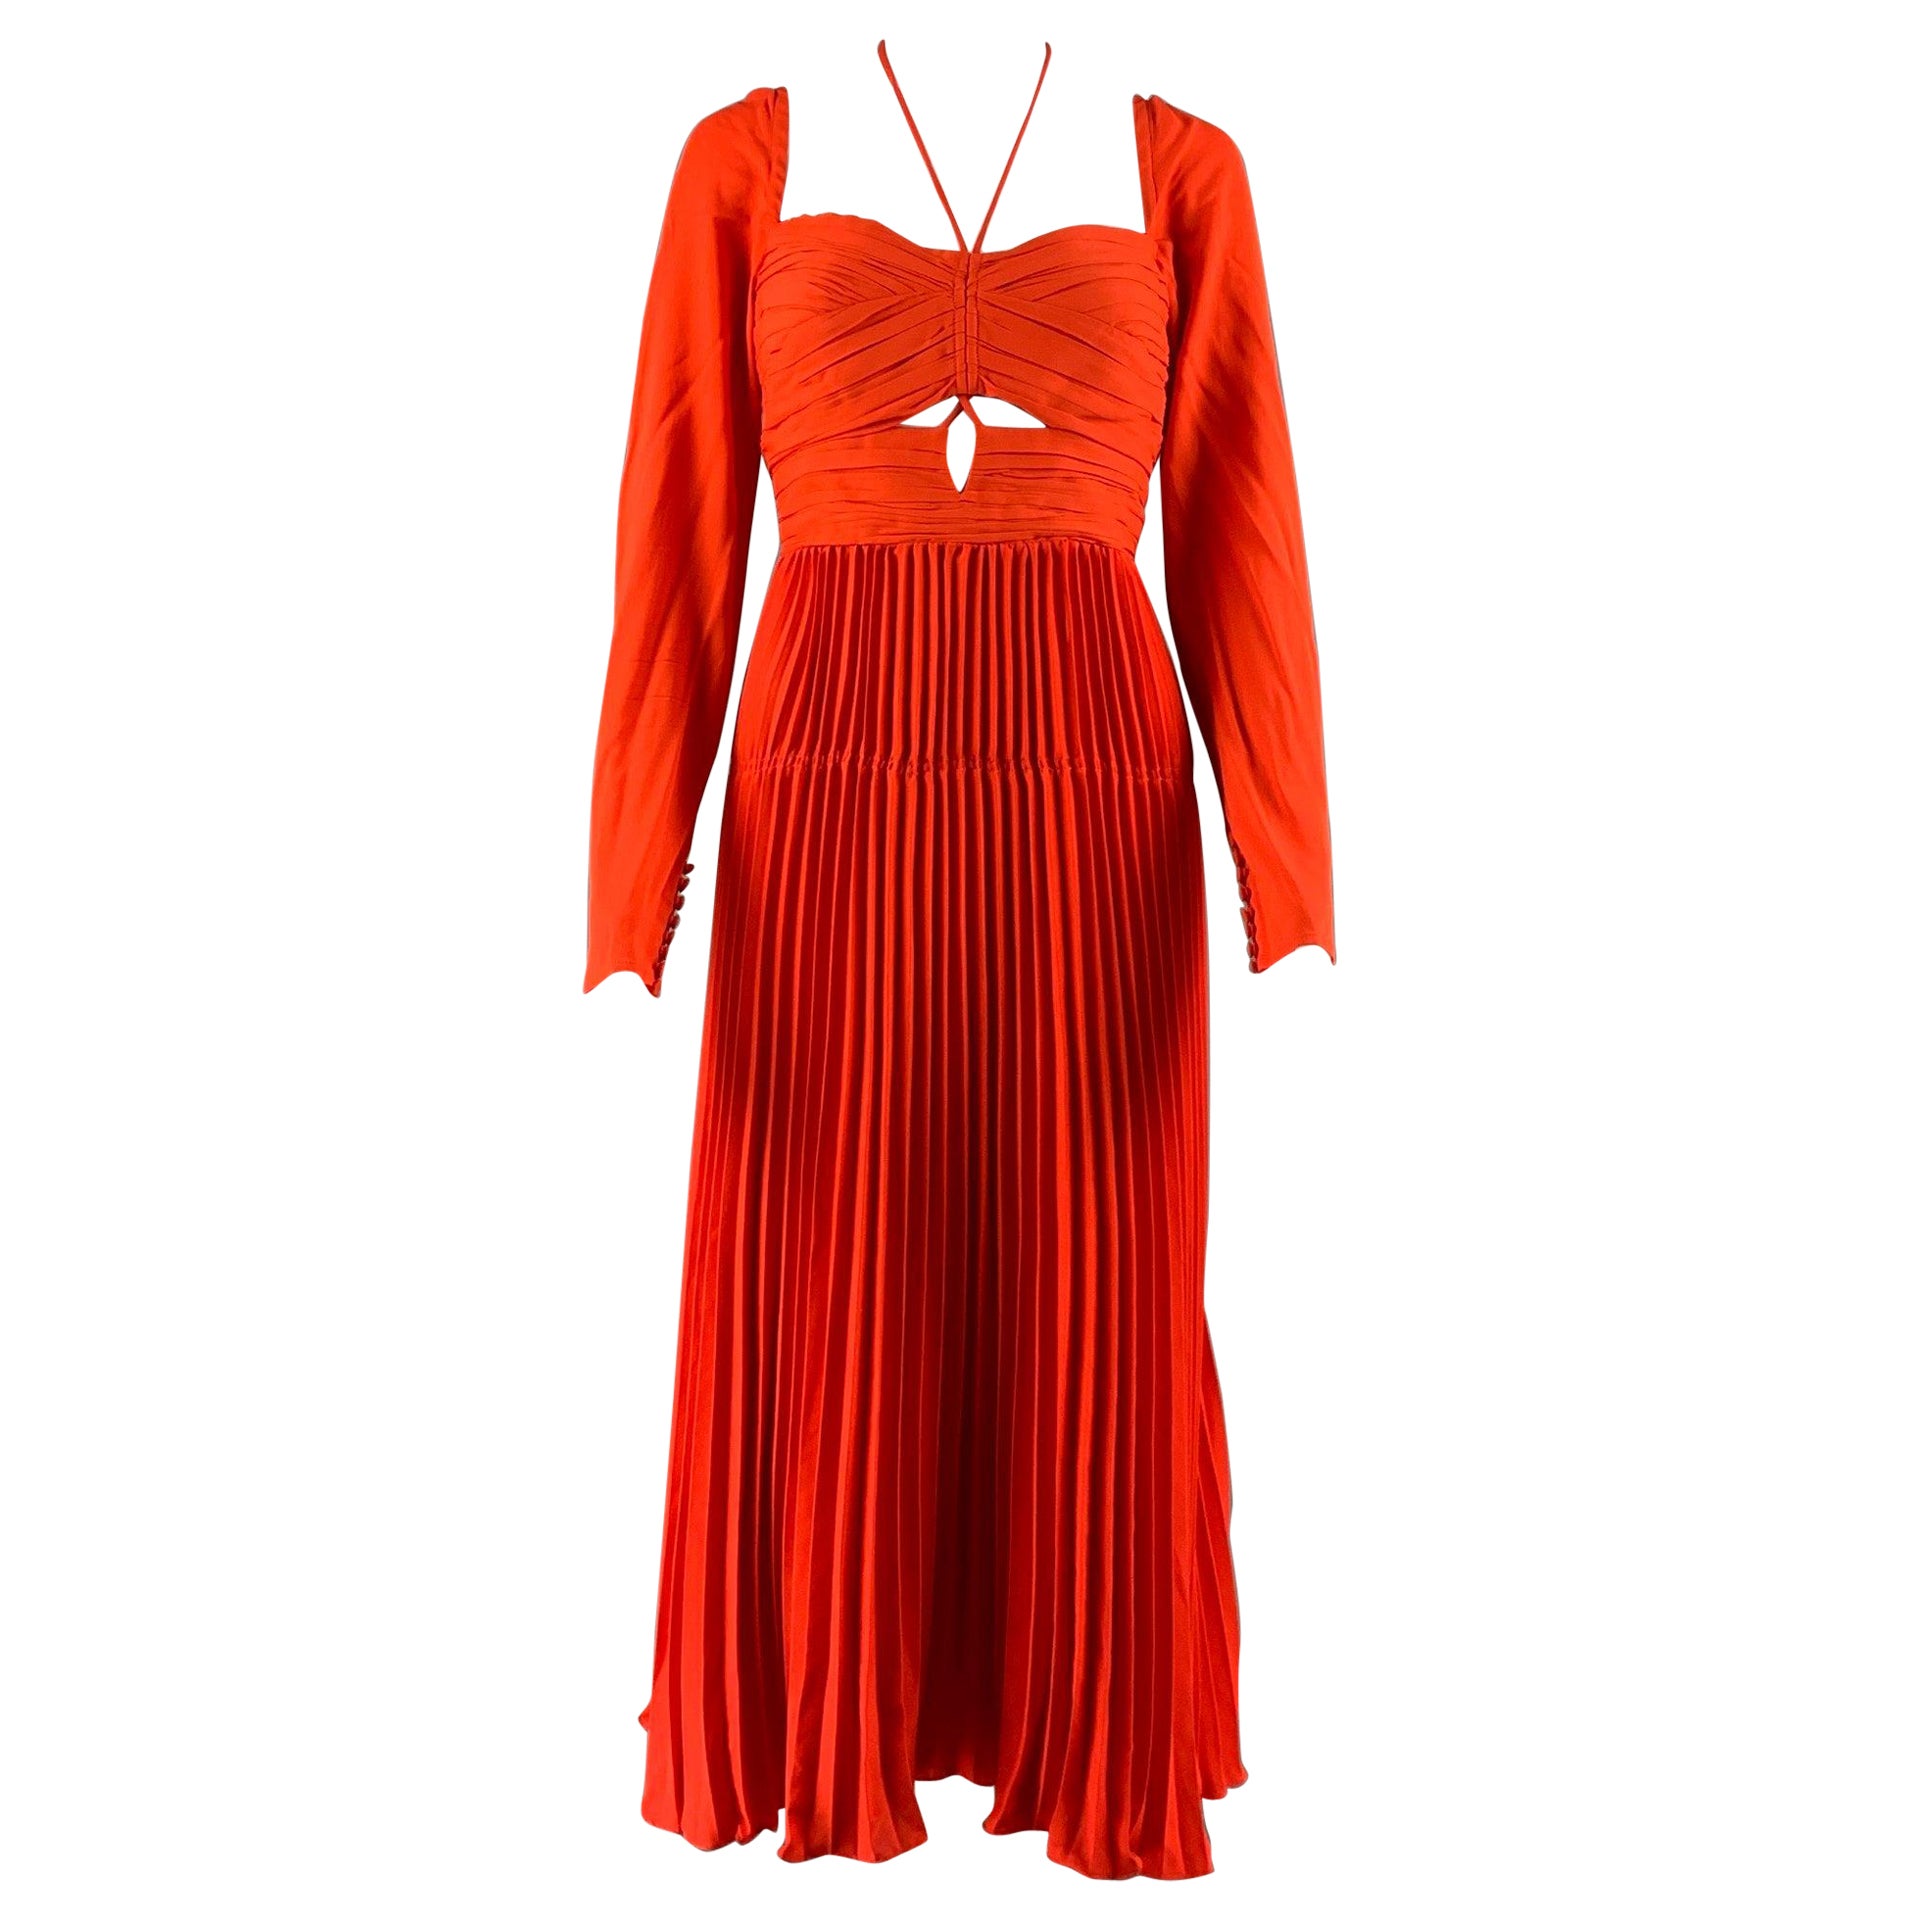 SELF-PORTRAIT Size 8 Orange Viscose Blend Pleated Off-Shoulder Cocktail Dress